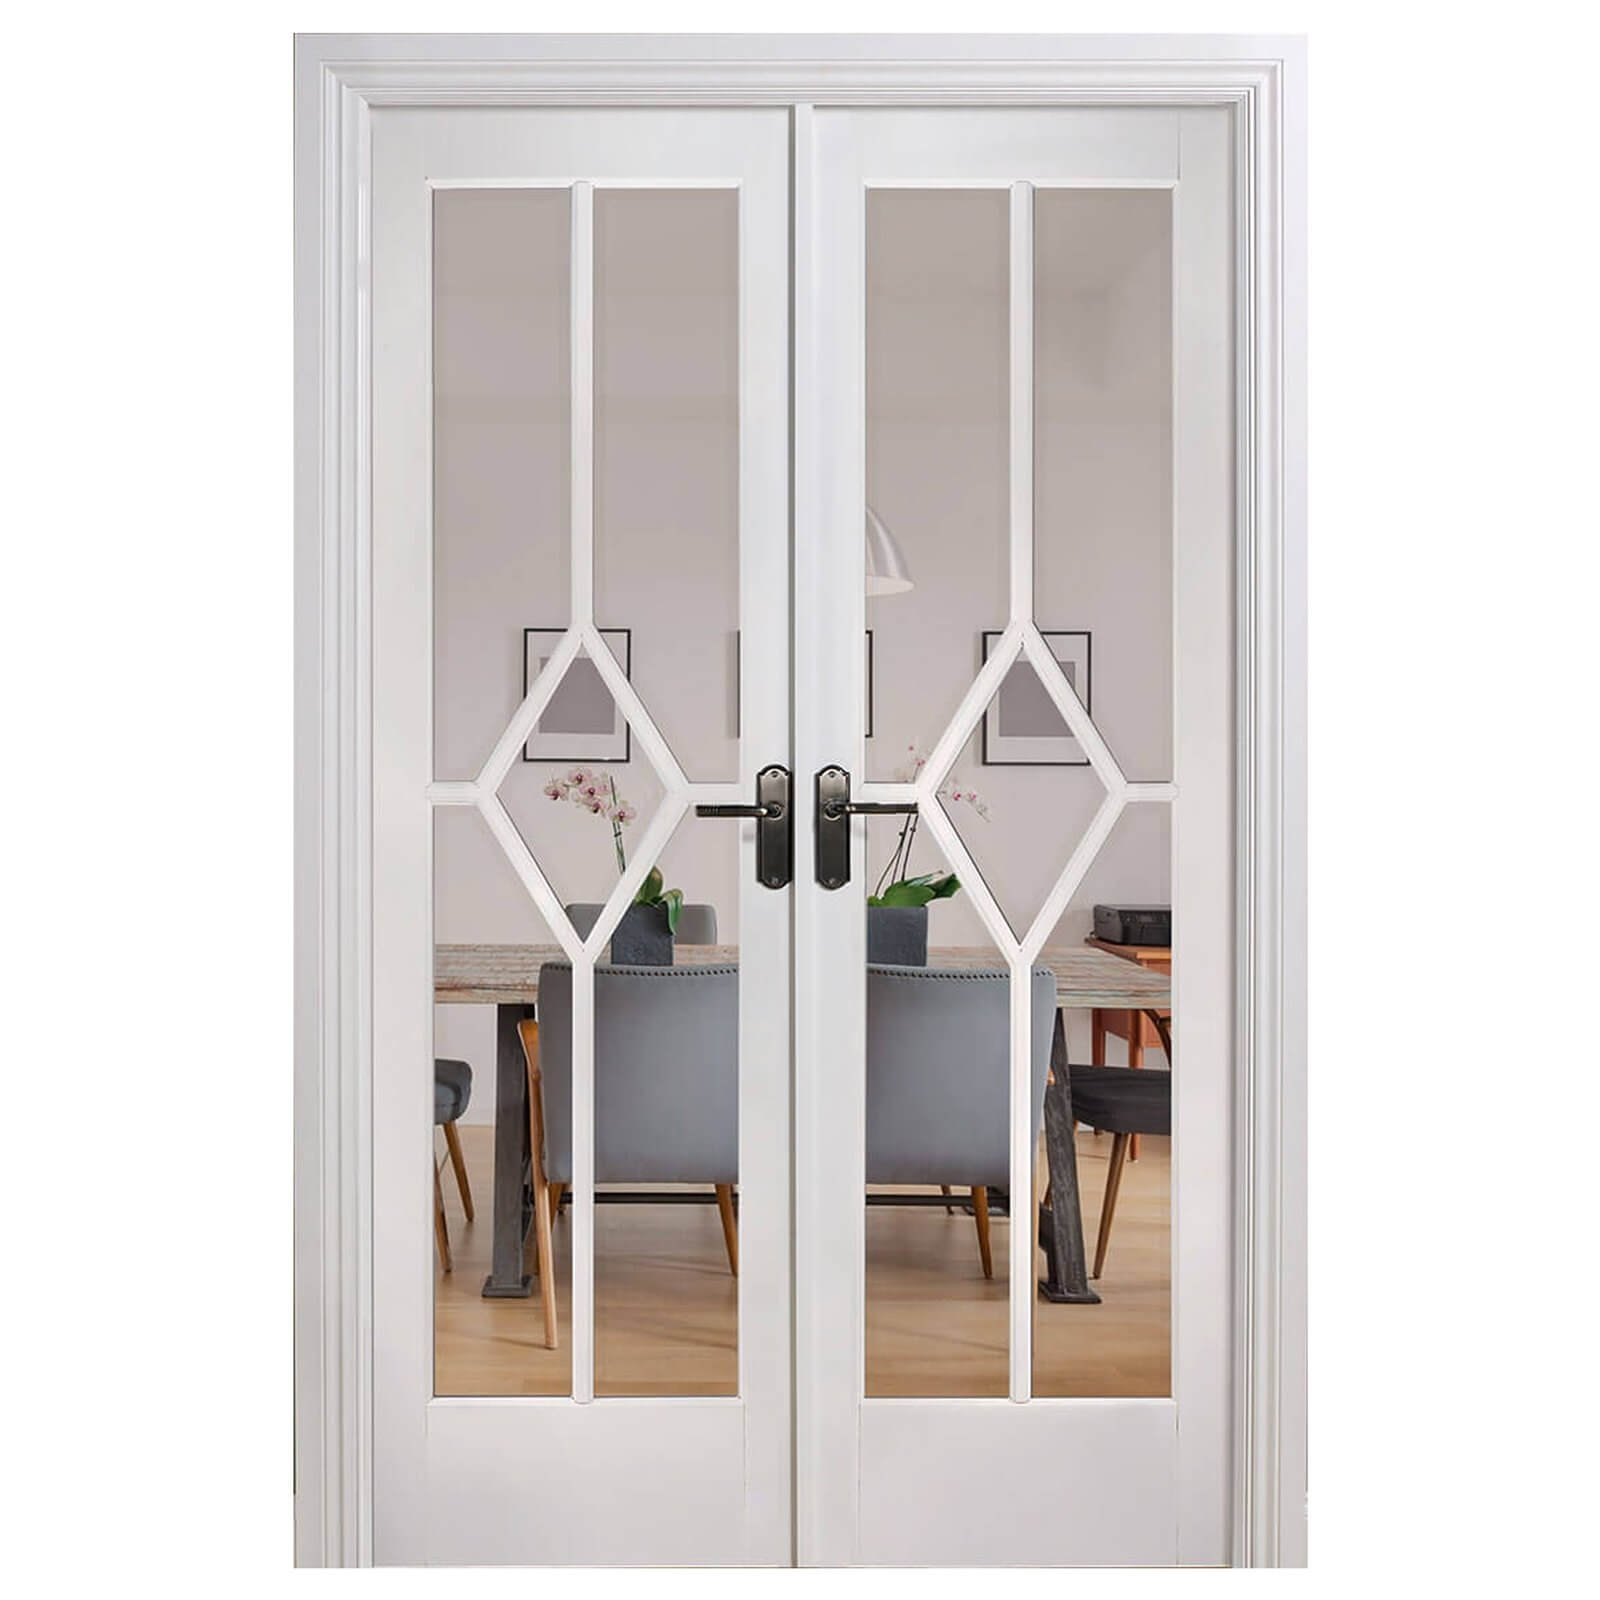 Reims Internal Glazed Primed White Room Divider - 1246 x 2031mm